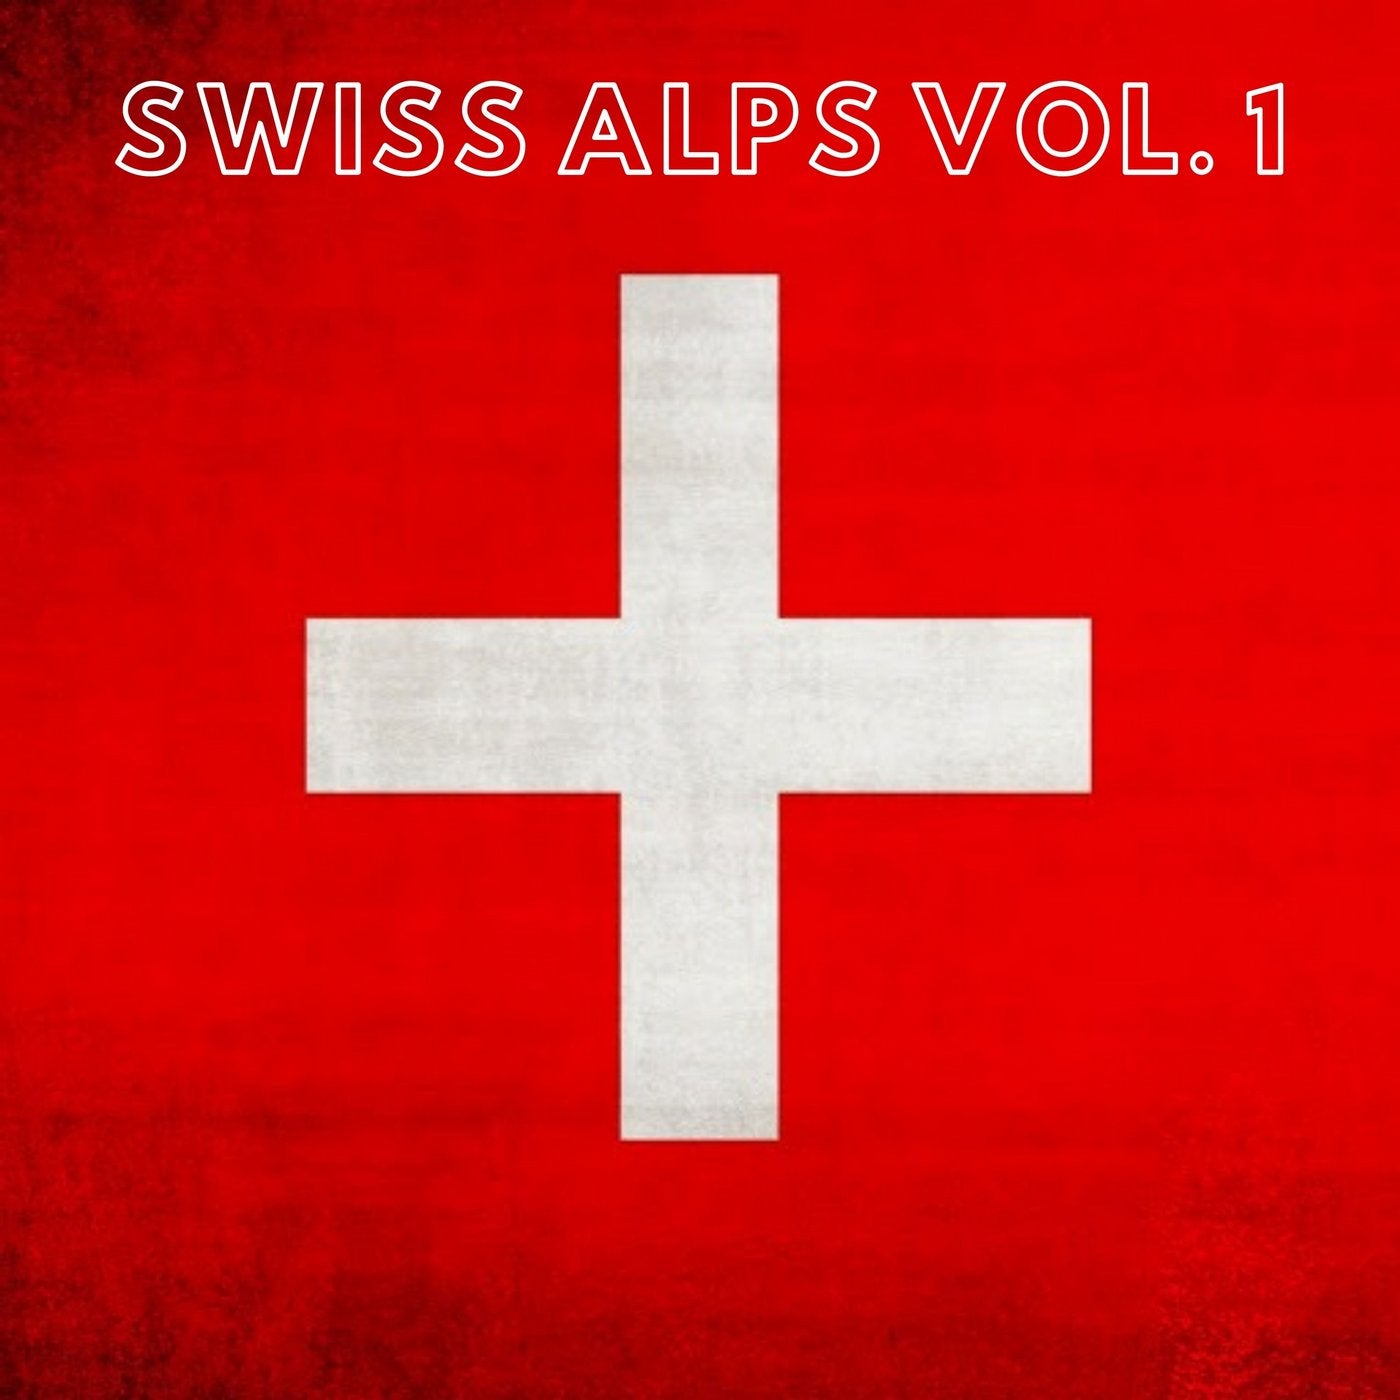 Swiss Alps Vol. 1